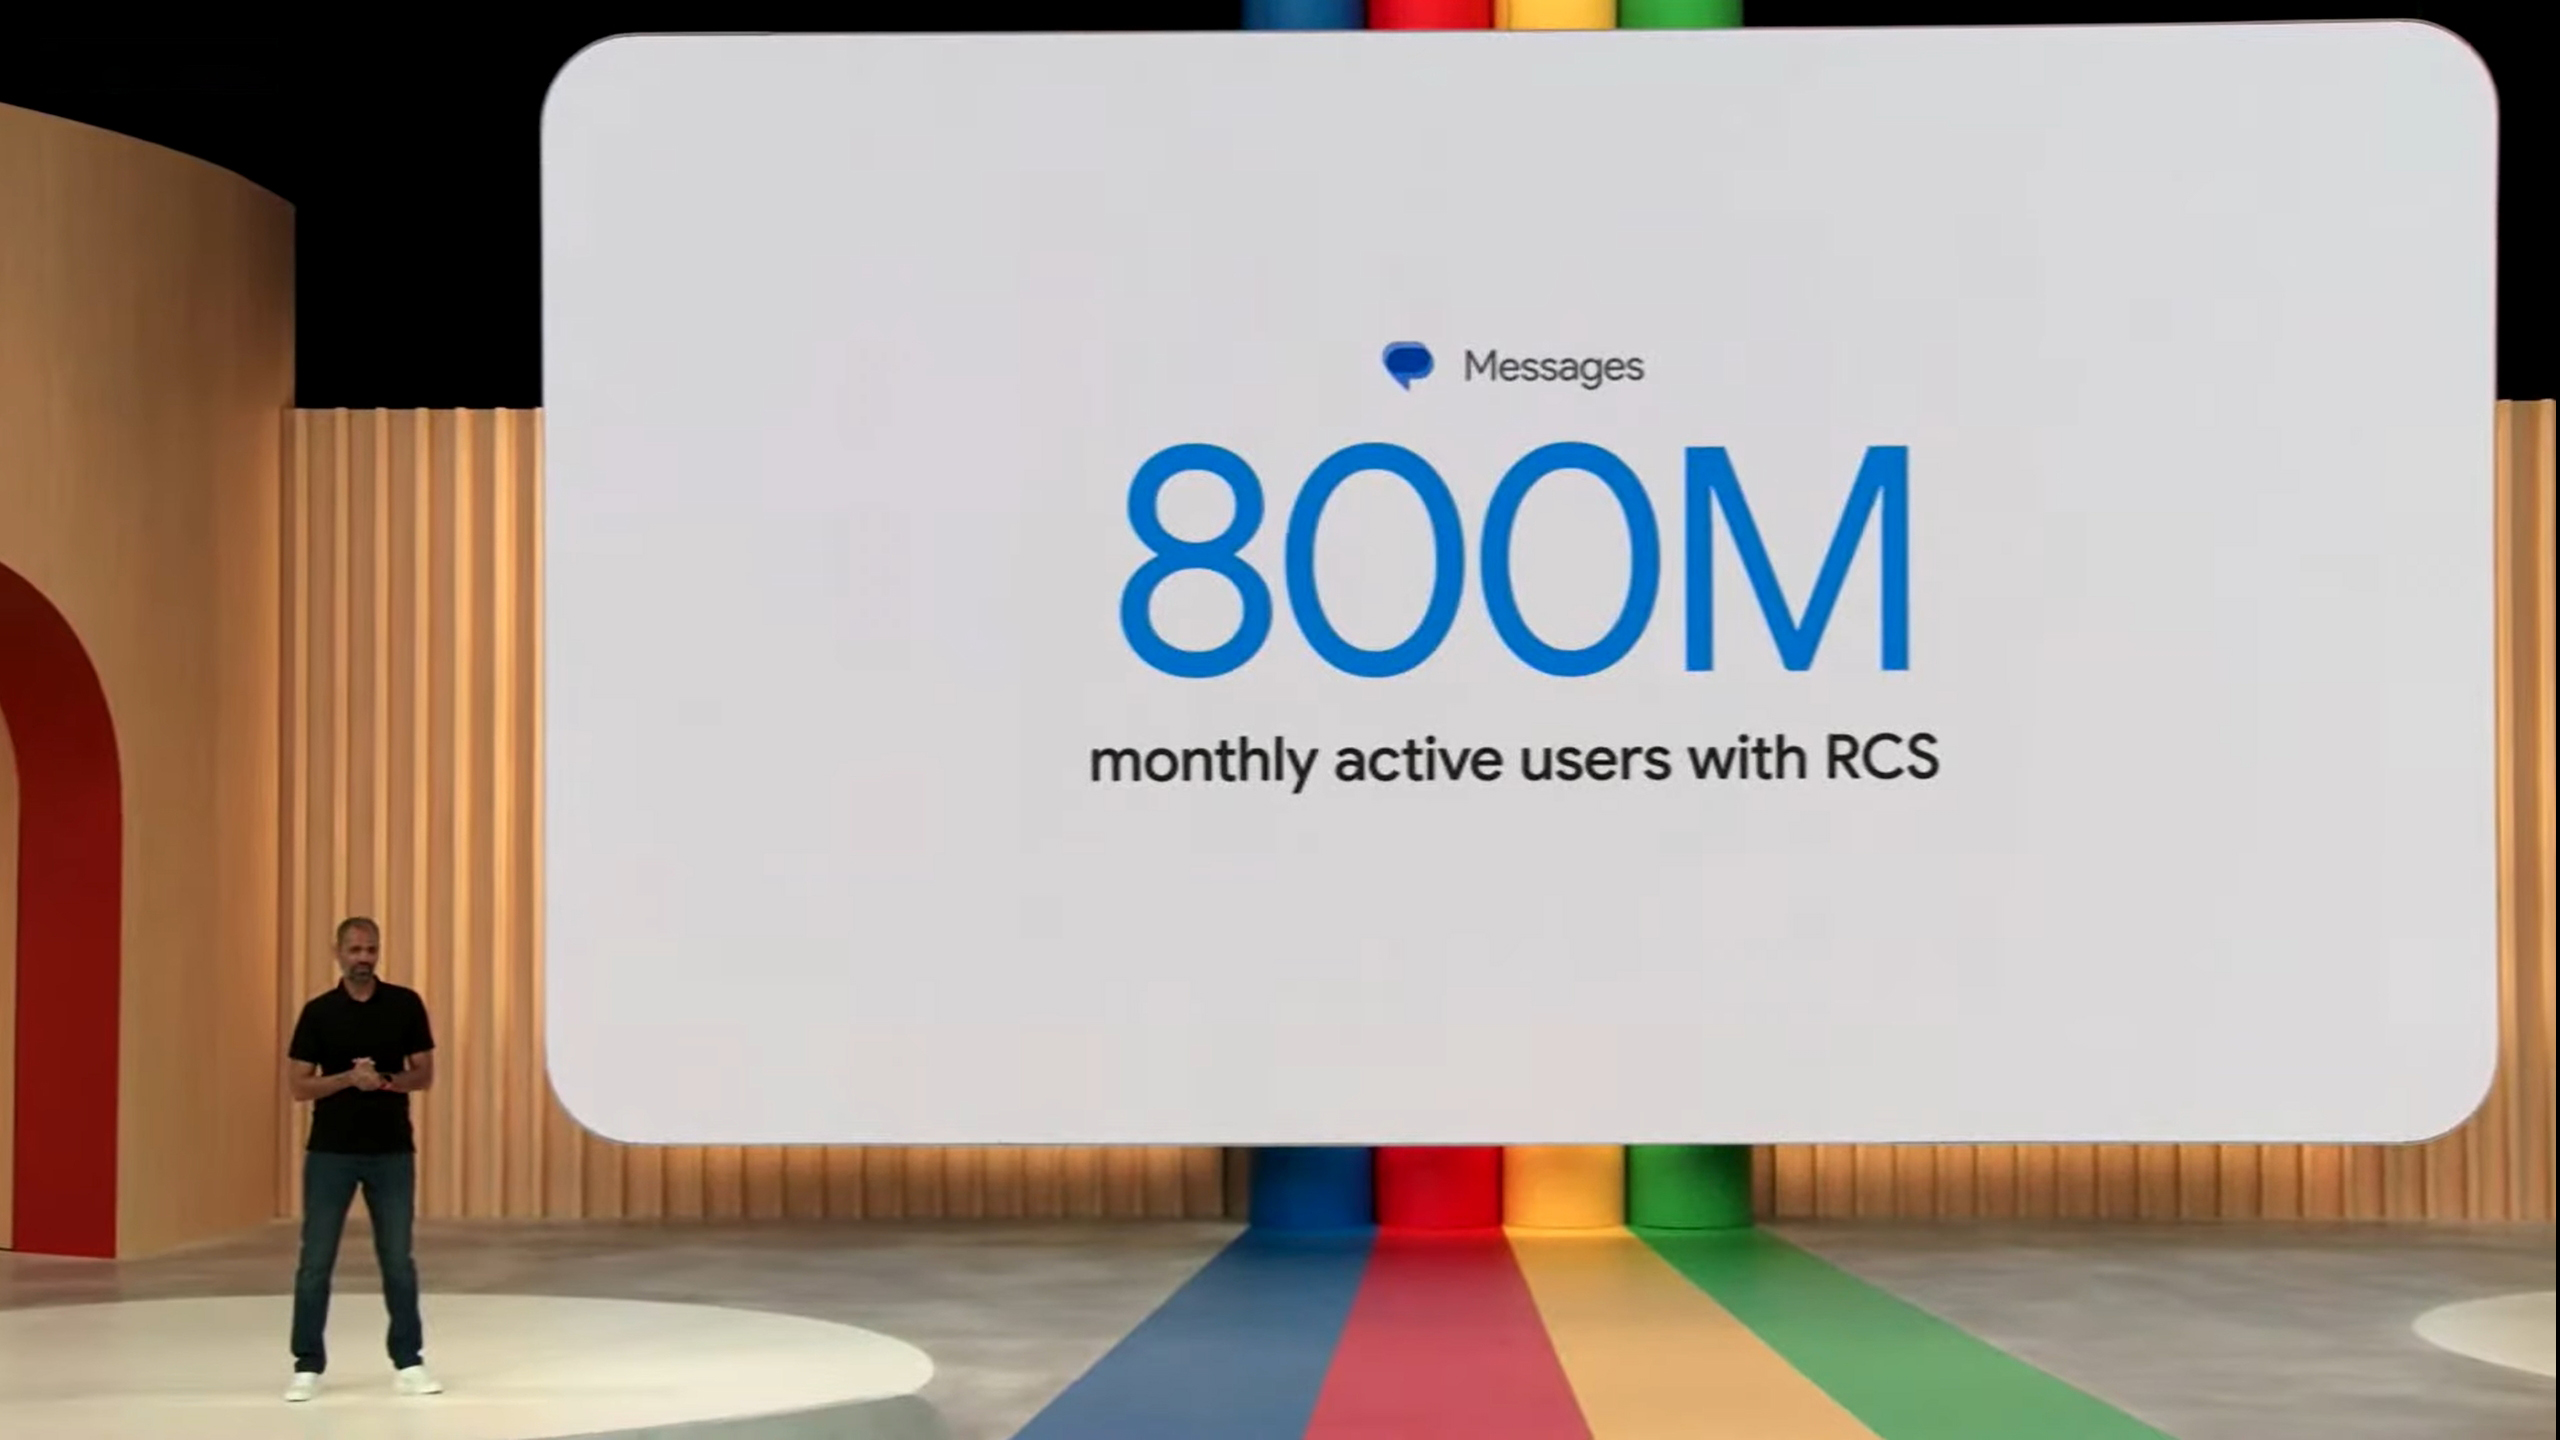 RCS Kini Mempunyai 800 Juta Pengguna Aktif Bulanan